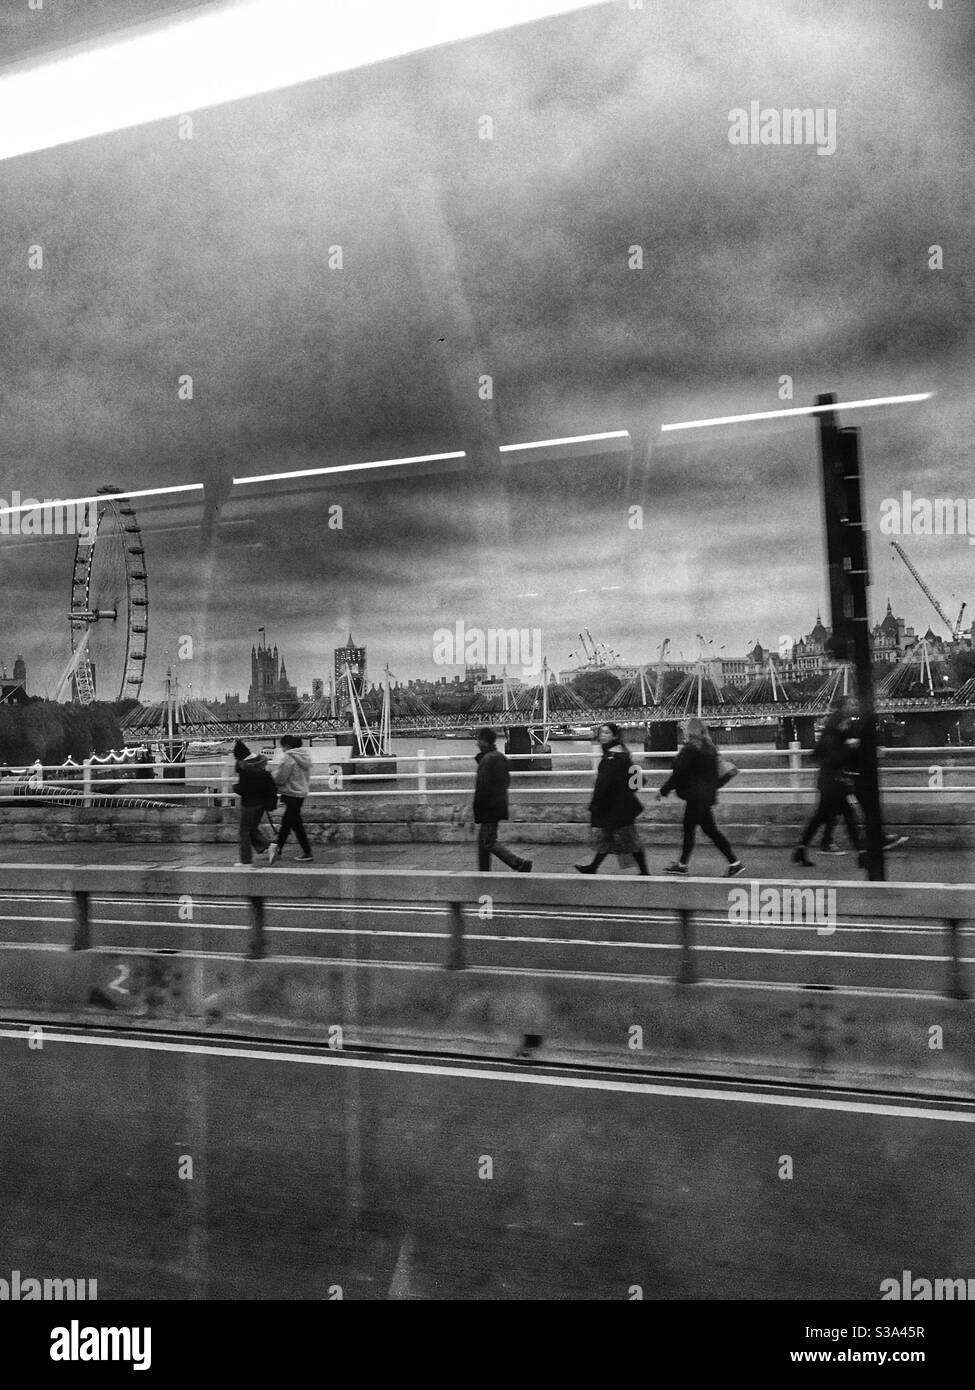 Waterloo Bridge, Londra, Regno Unito, 27 settembre 2020. Le persone che camminano riflettono la velocità della città contemplata attraverso una finestra. Foto Stock